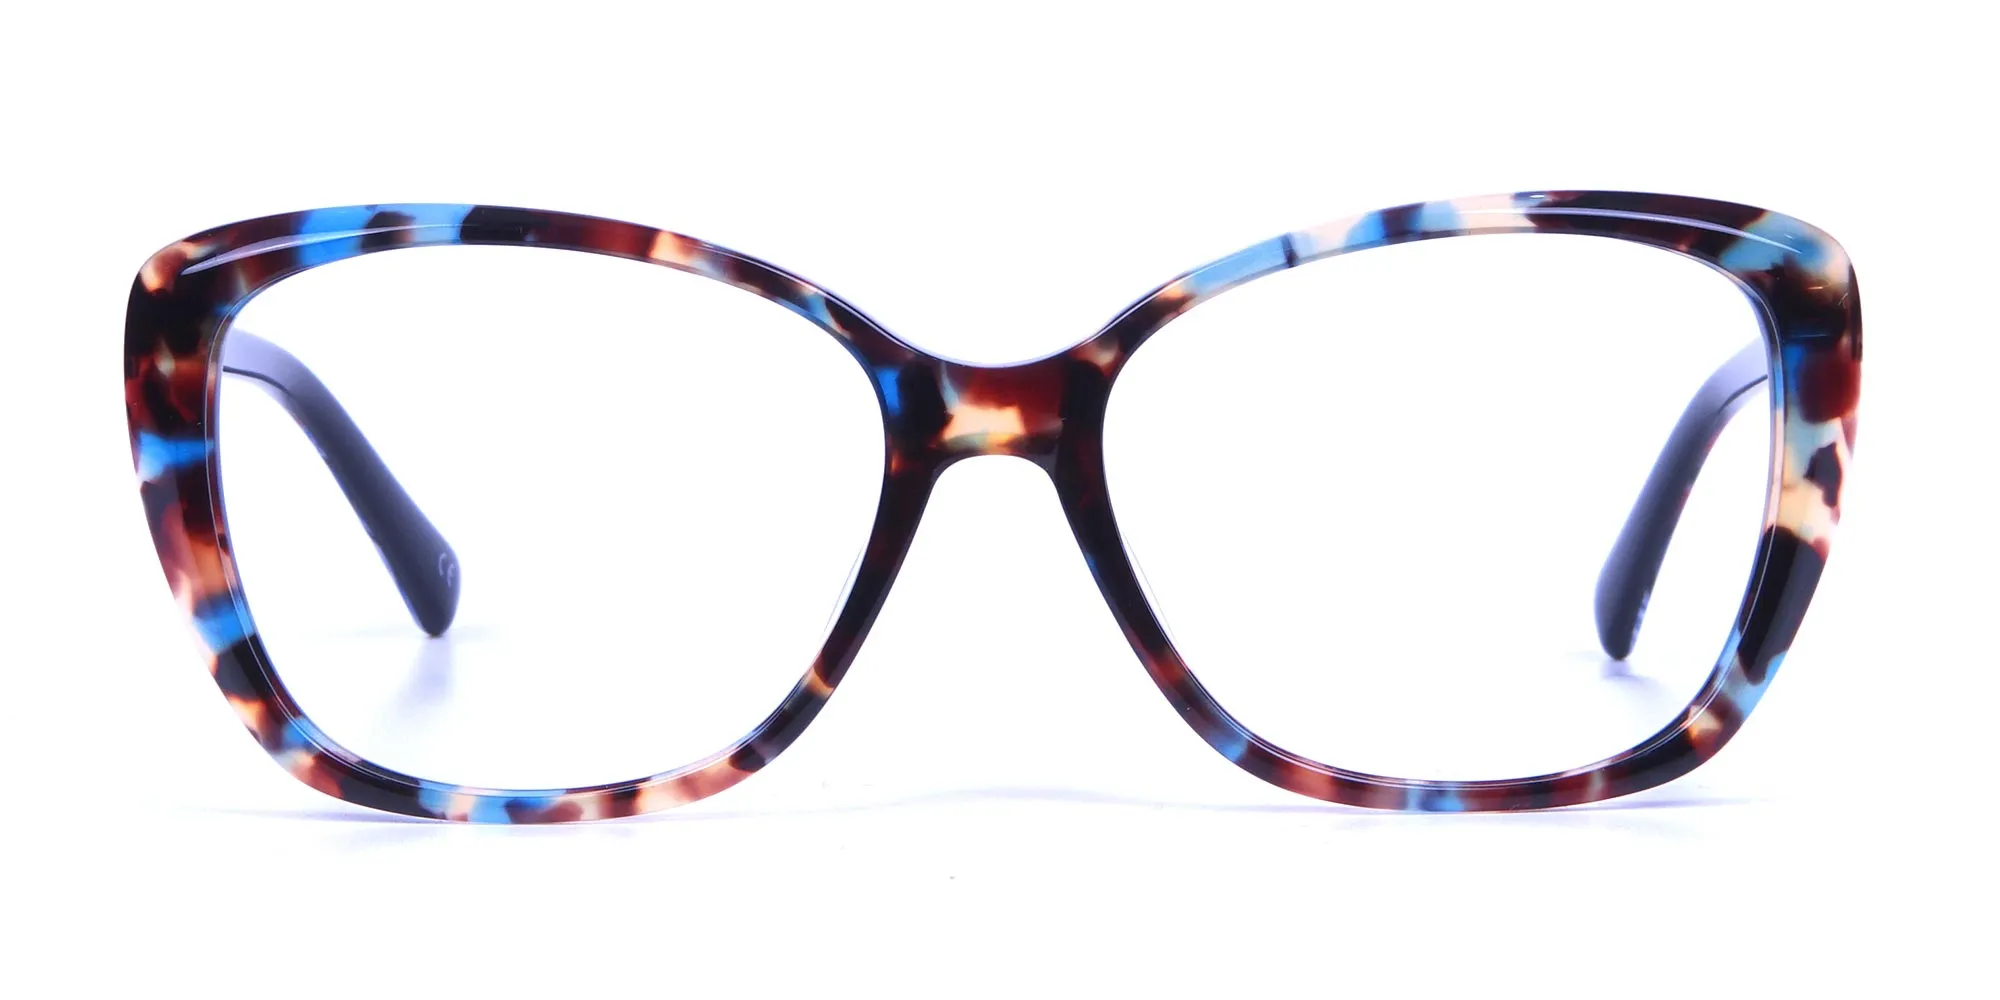 Blue Tortoiseshell Cateye Glasses for Women - 1